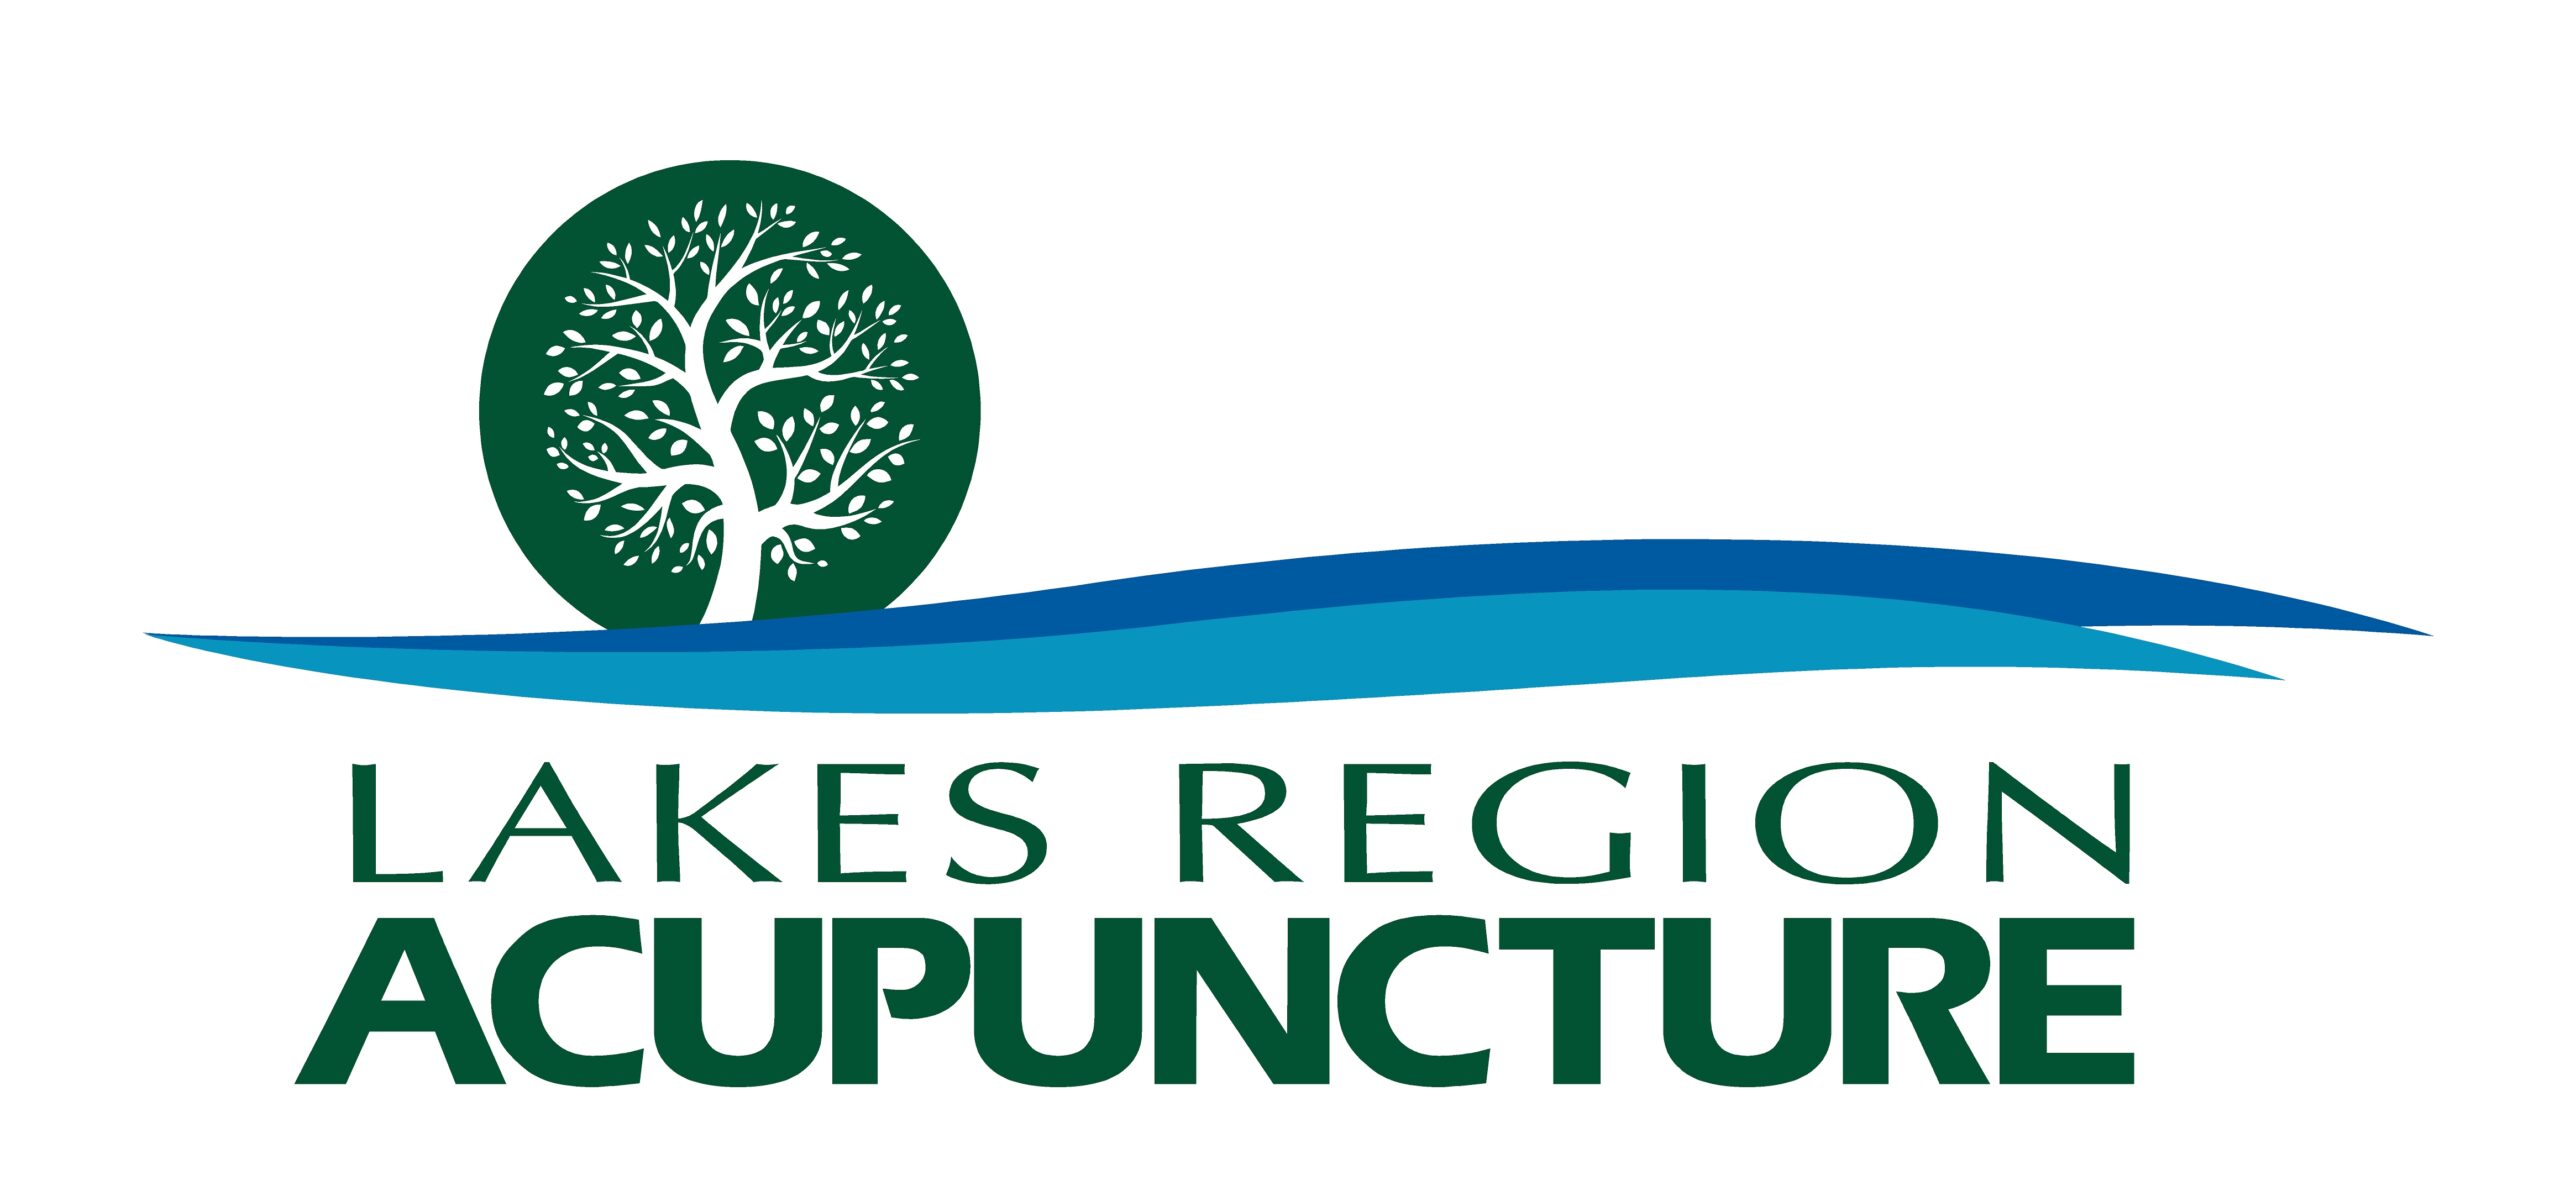 Lakes Region Acupuncture